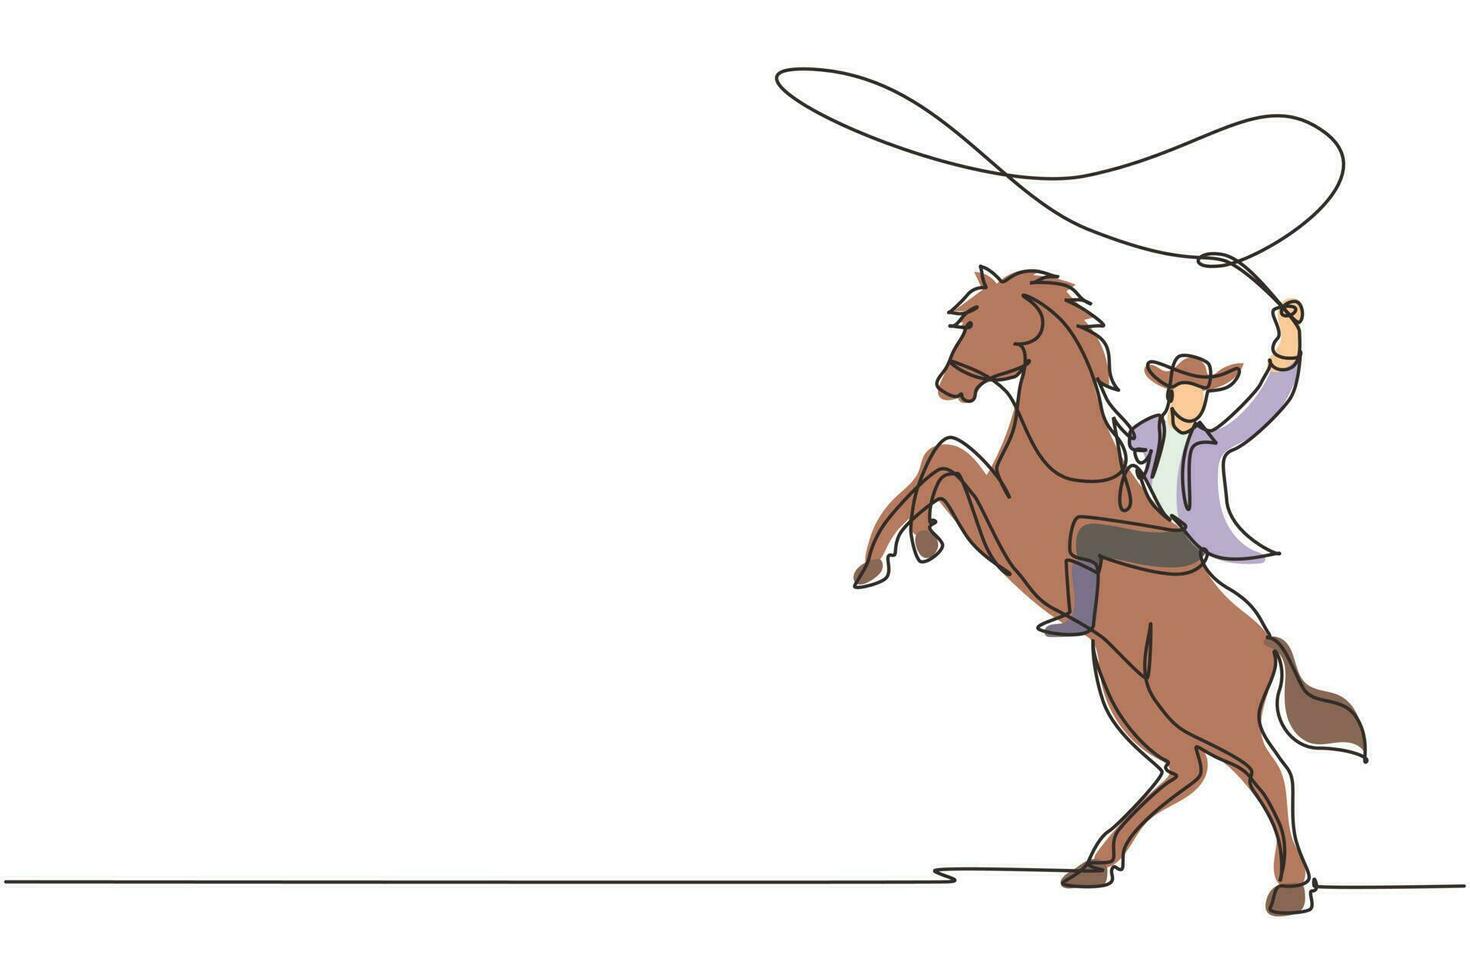 único um cowboy de desenho de linha com laço na criação de cavalo. cowboy com laço de corda no cavalo. cowboy americano andando a cavalo e jogando laço. ilustração em vetor gráfico de desenho de linha contínua